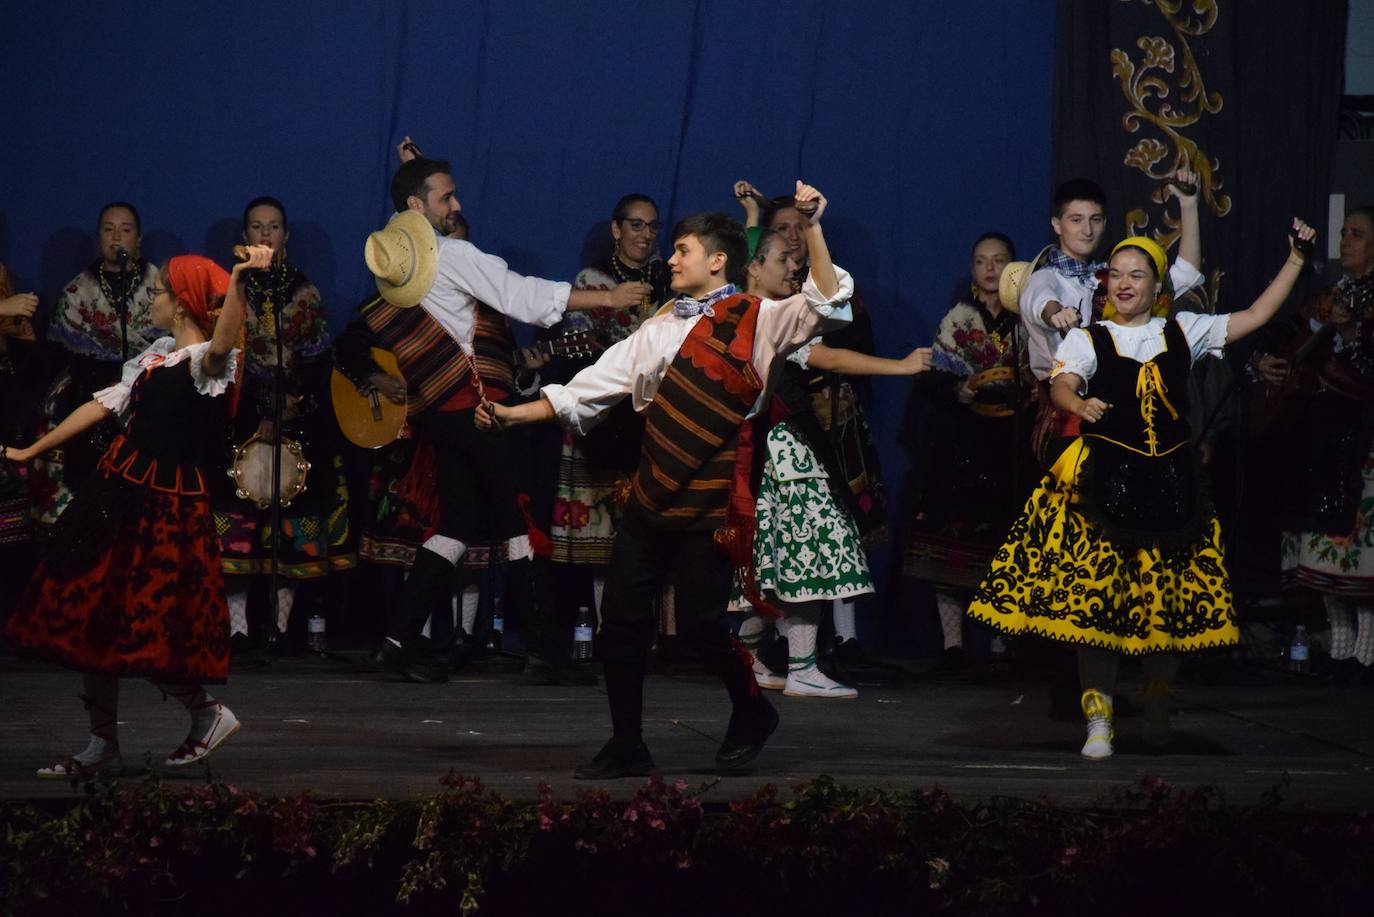 Imagen secundaria 1 - Los vecinos arropan a Los Coros y danzas Virgen del Rosario, con el festival de Valfermoso